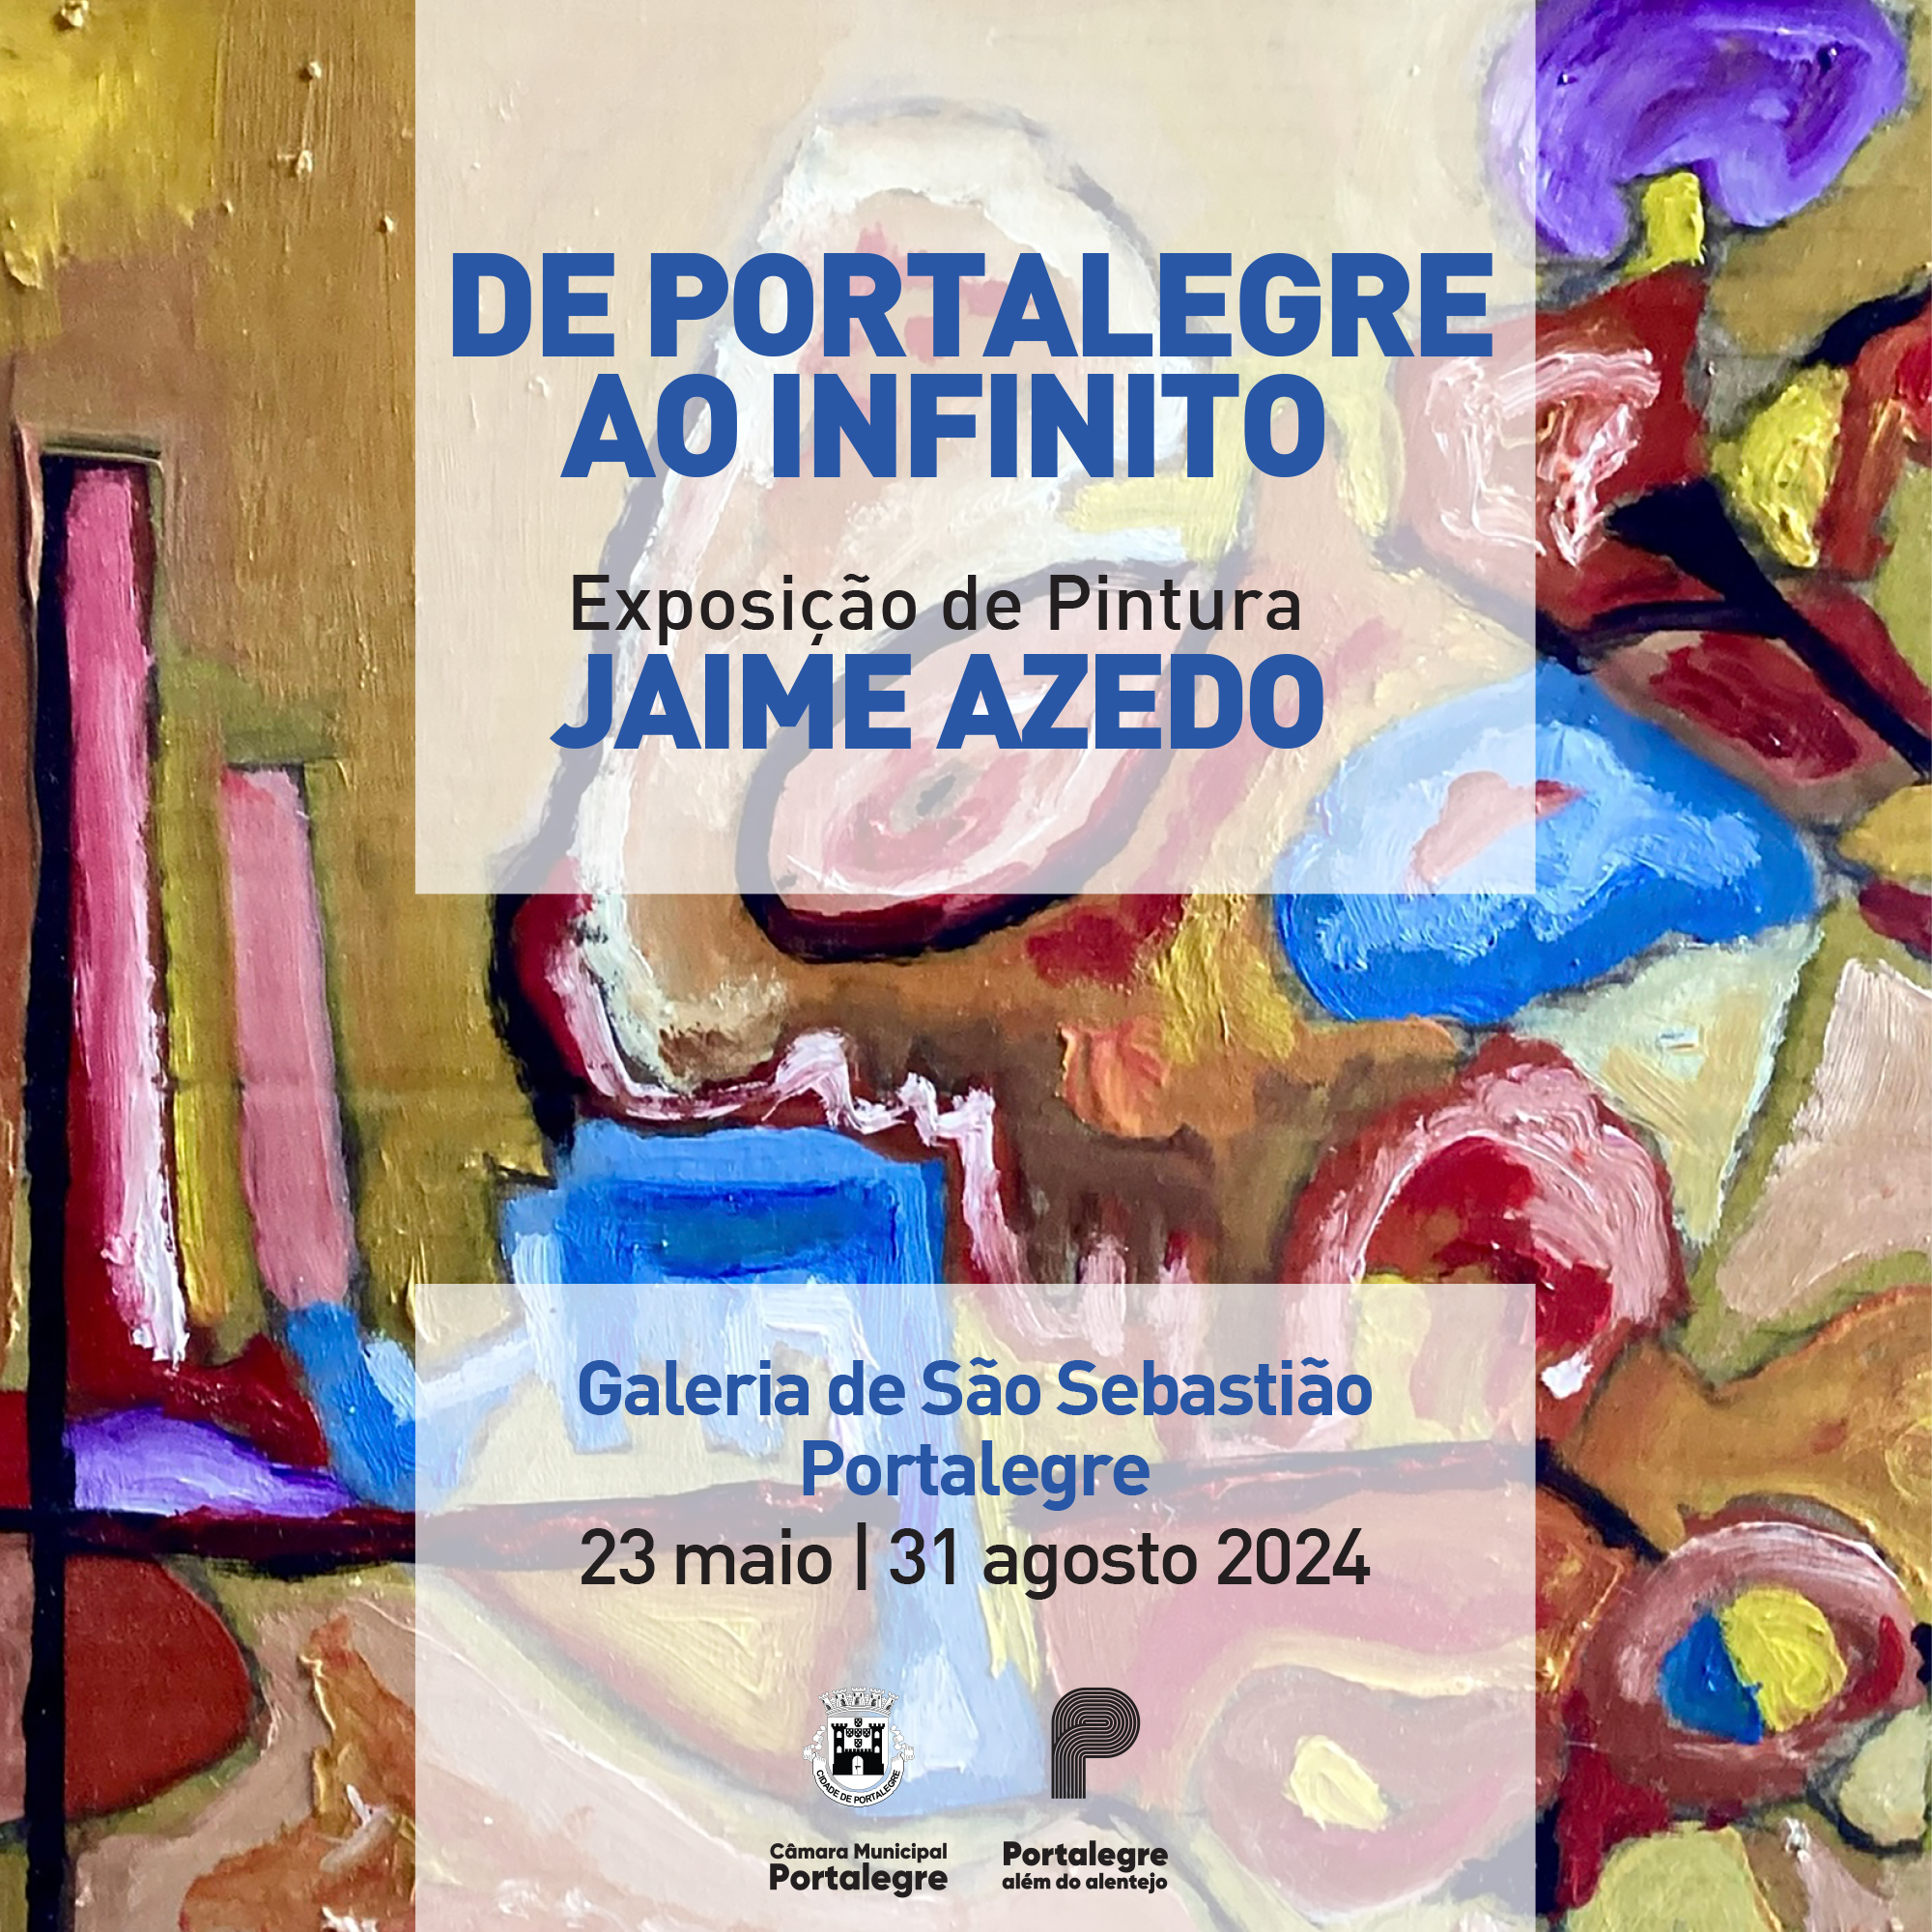 Exposição “De Portalegre ao Infinito”, de Jaime Azedo